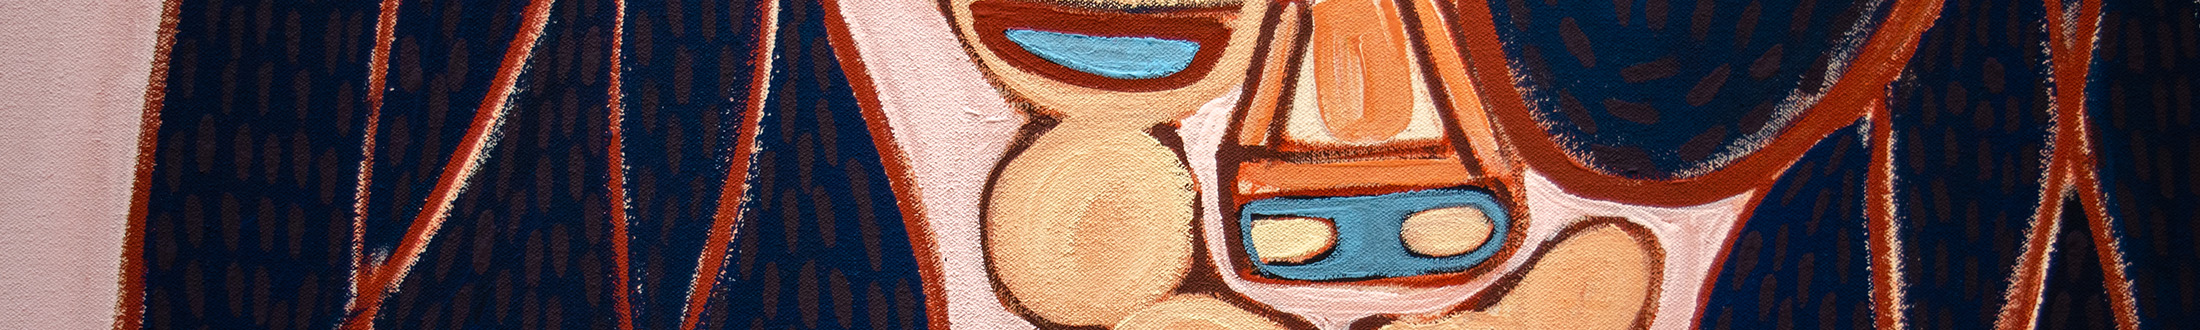 Exhibition Artwork Detail Header